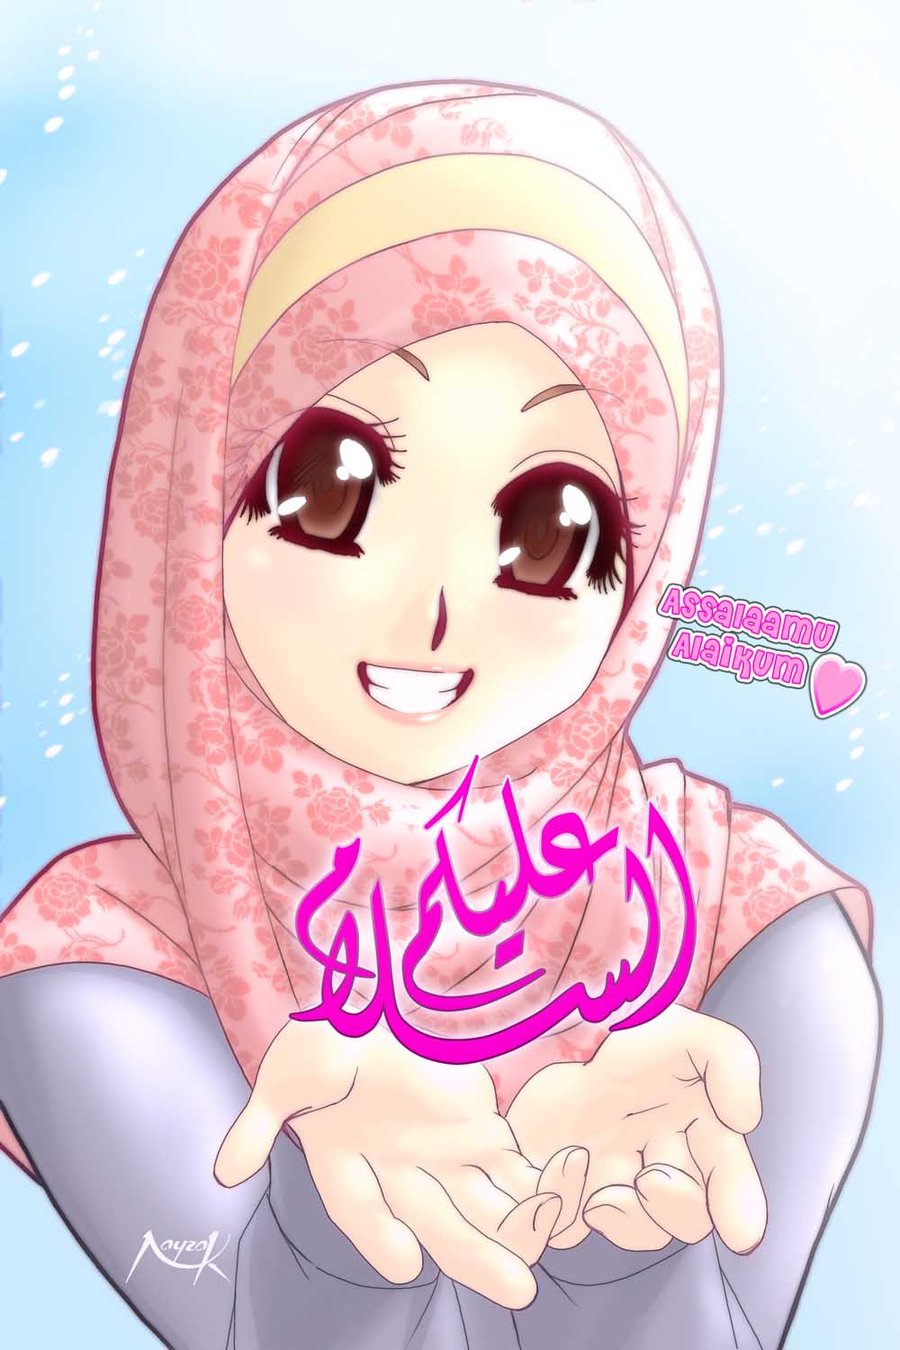 Gambar Kartun Muslimah Fotografer Yang Bagus Kata Kata